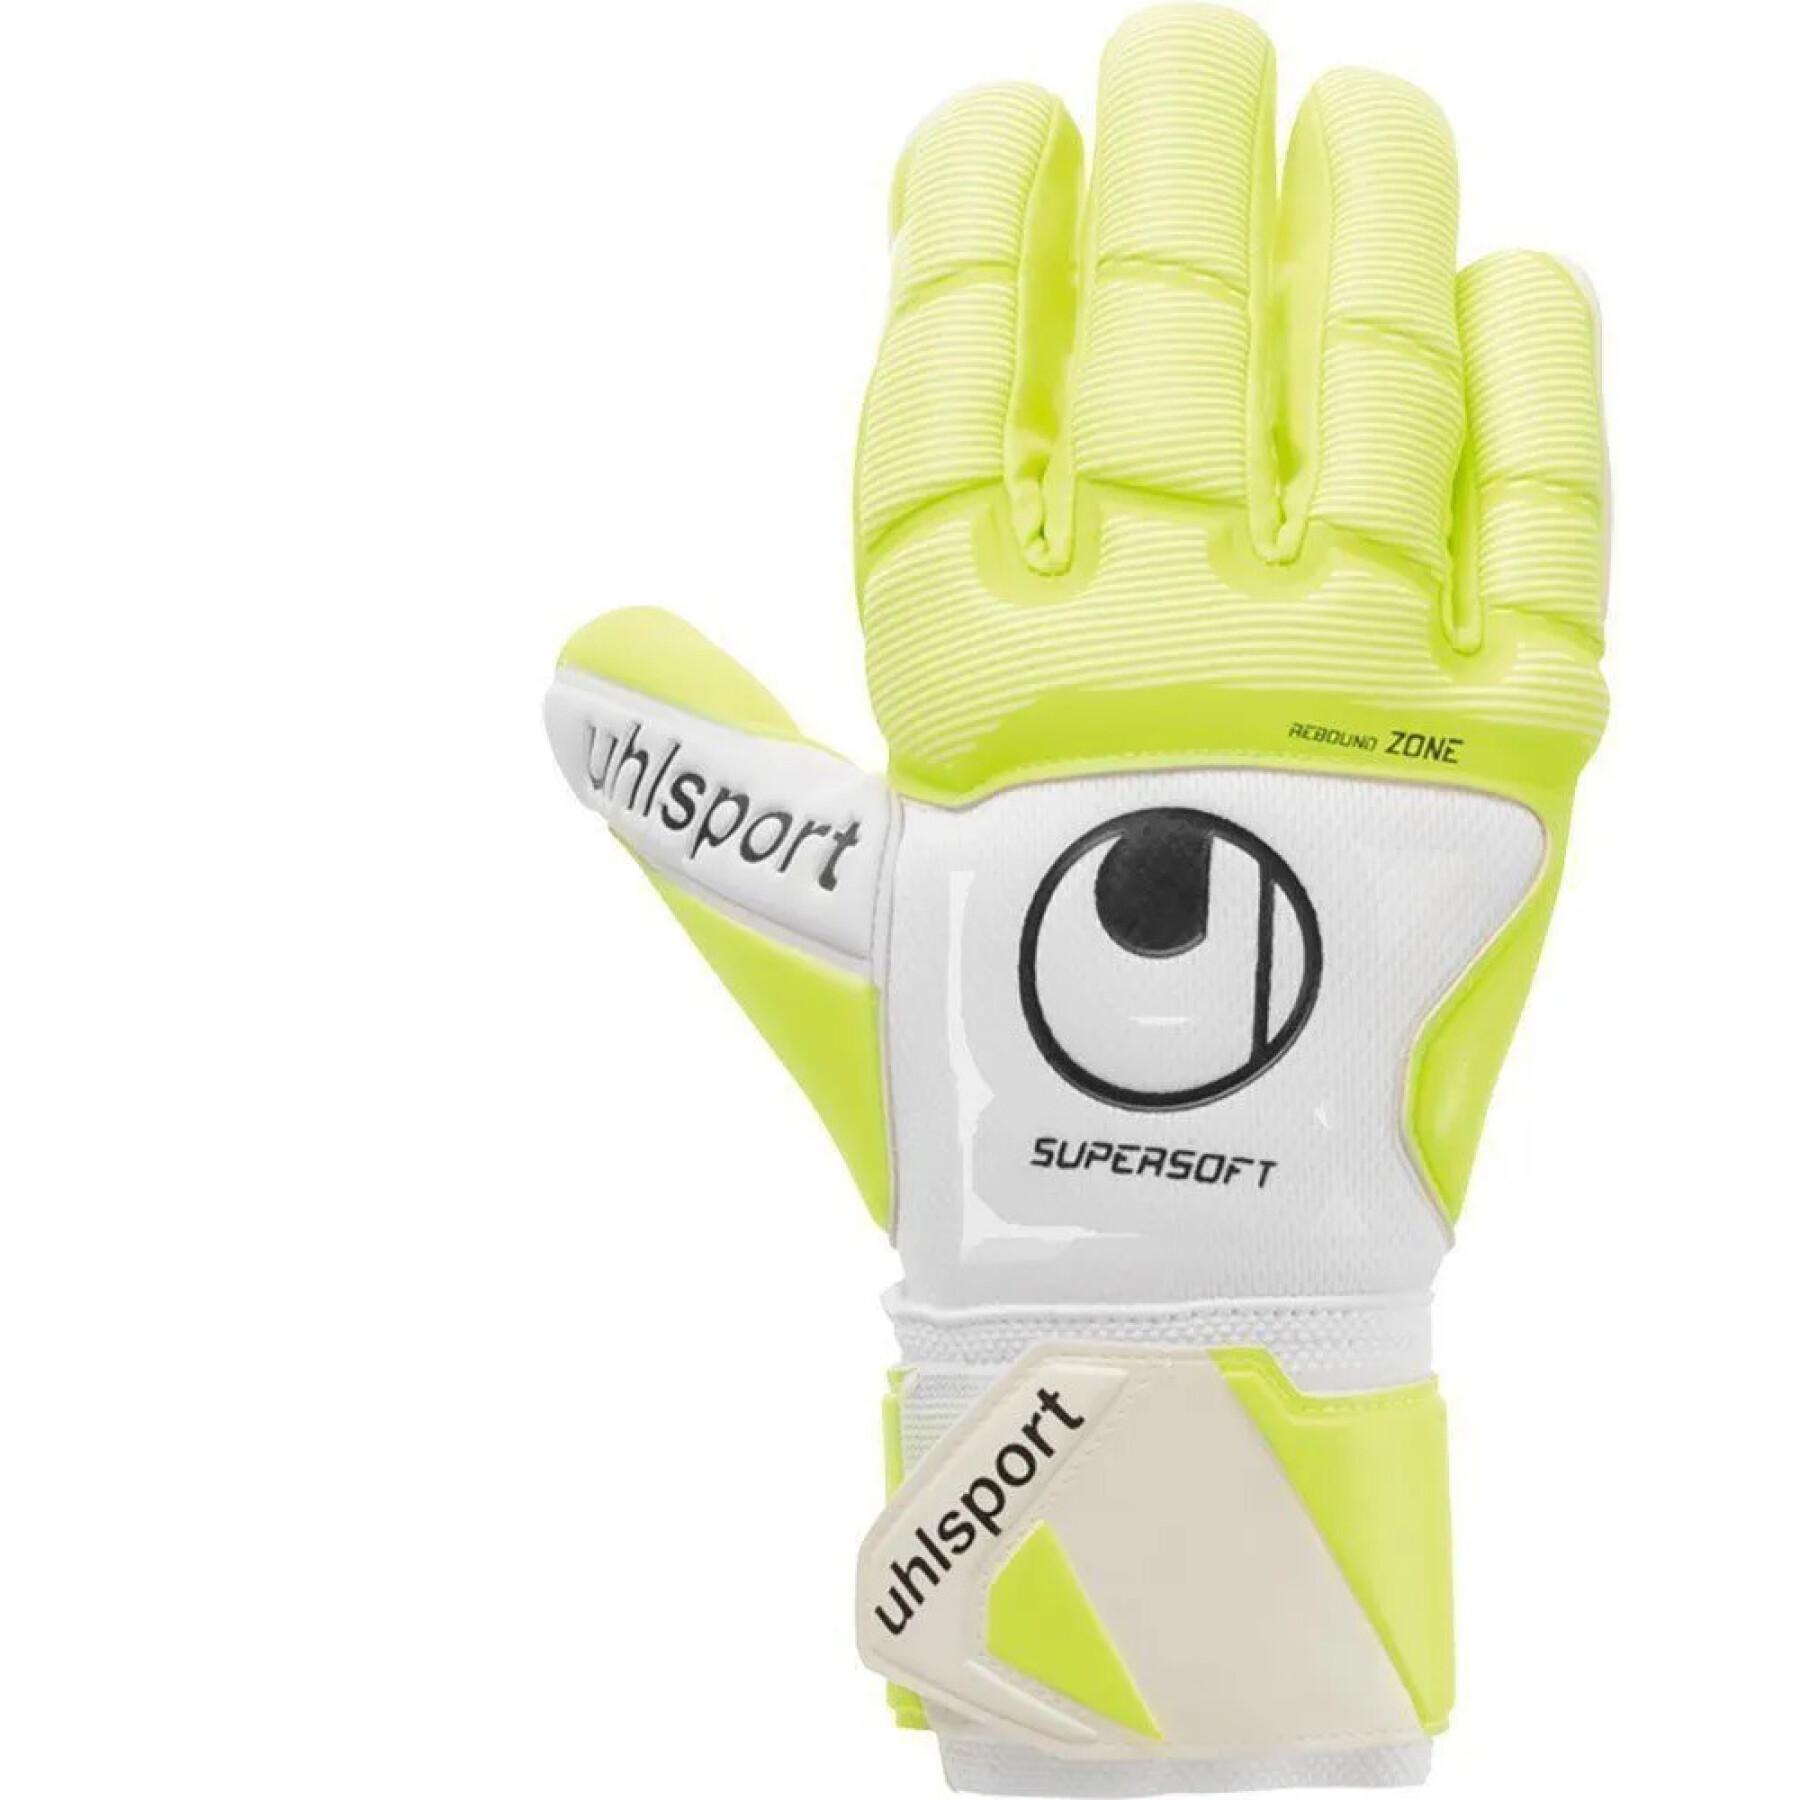 Goalkeeper gloves Uhlsport Pure Alliance Supersoft HN